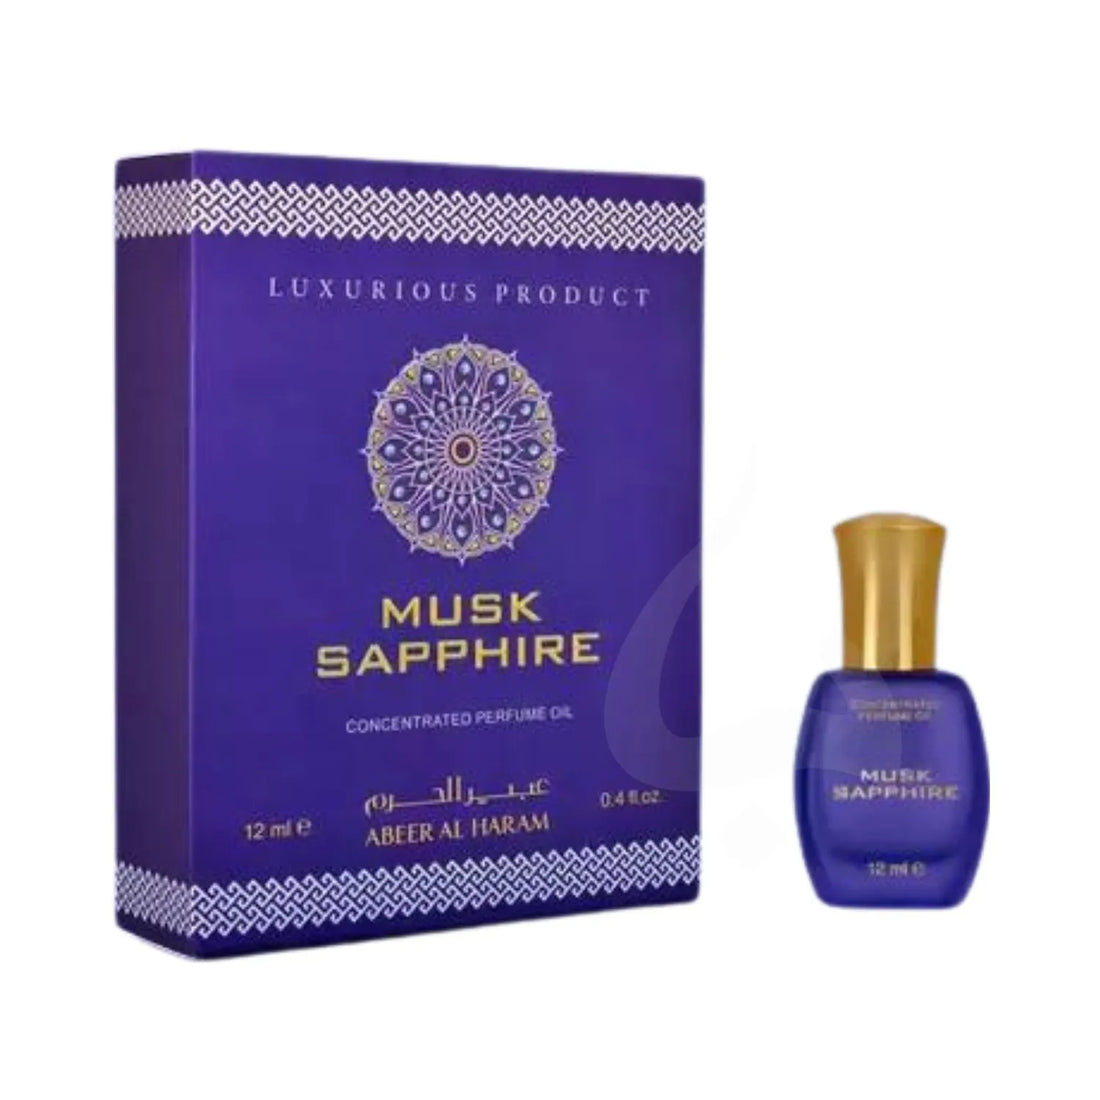 Musk Sapphire Perfume Oil Bottle